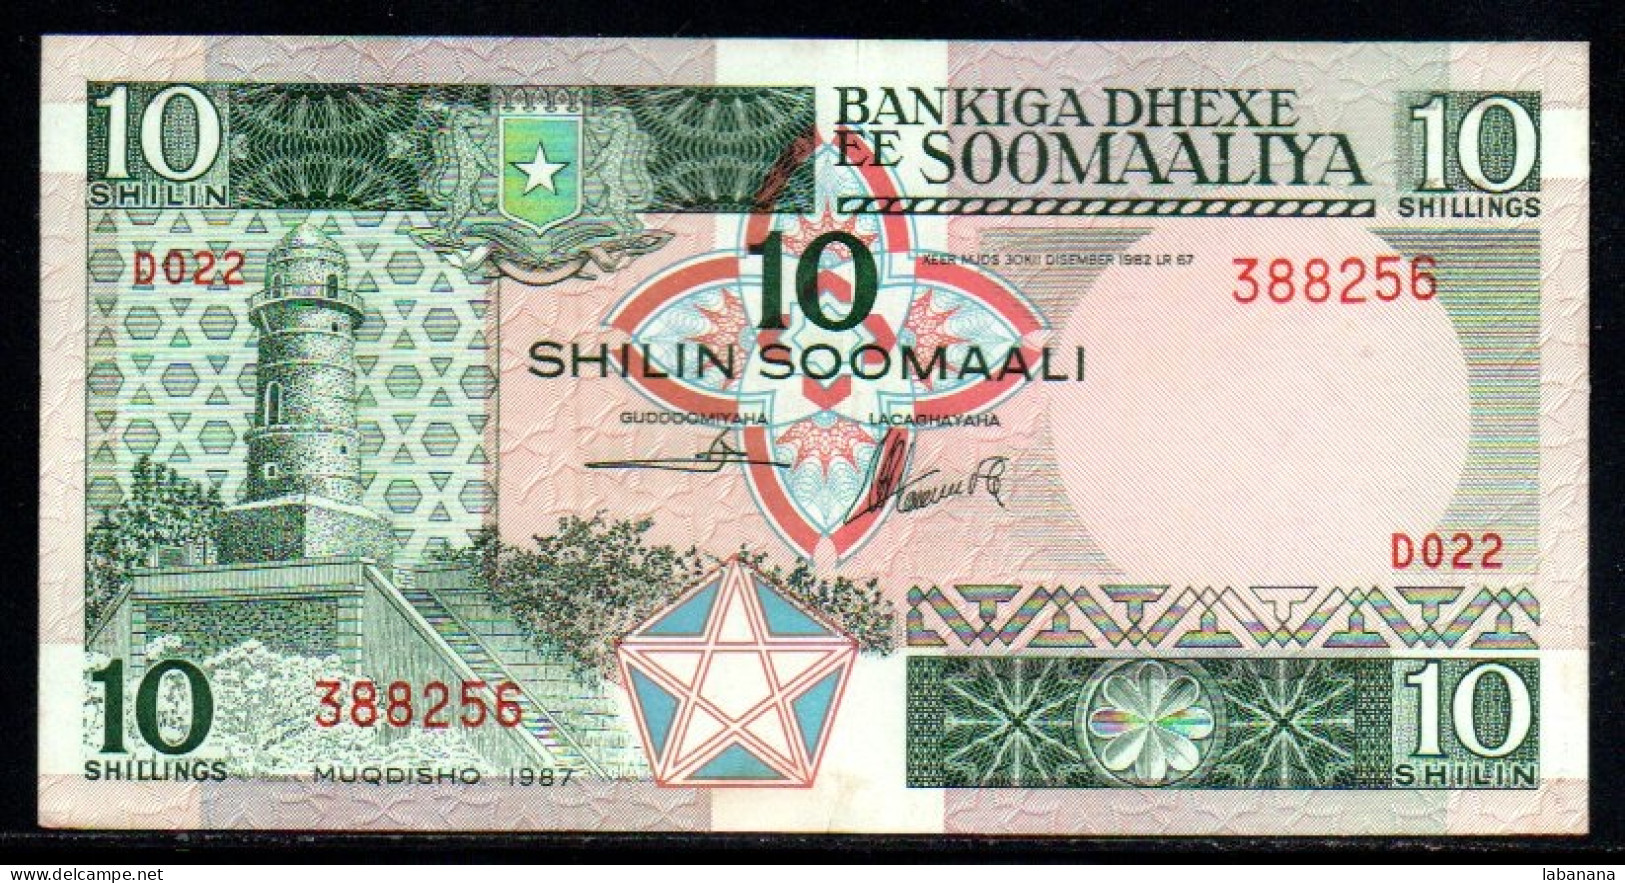 659-Somalie 10 Shilin 1987 D022 - Somalia